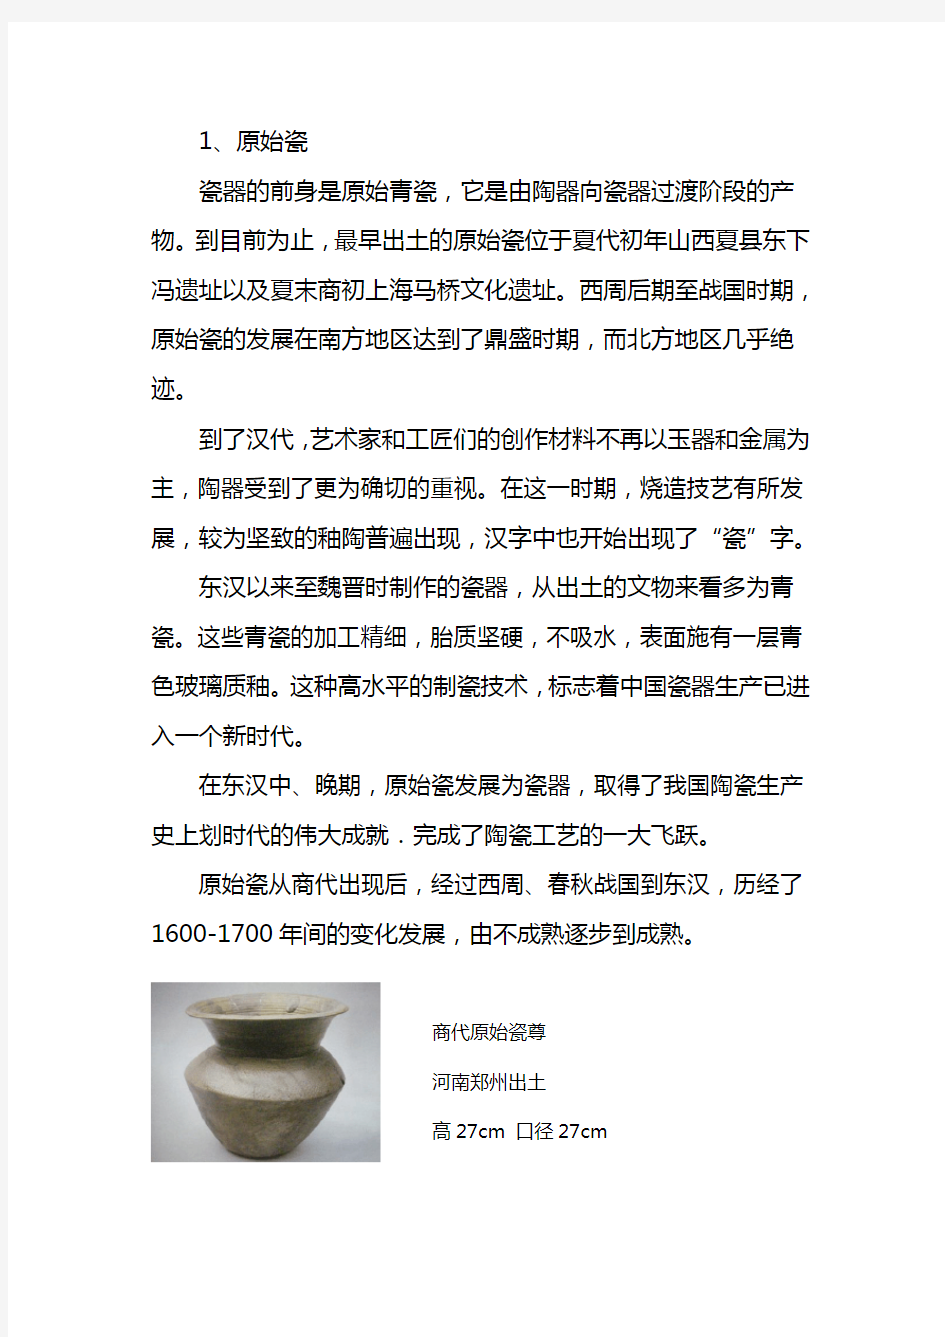 中国瓷器的发展历程